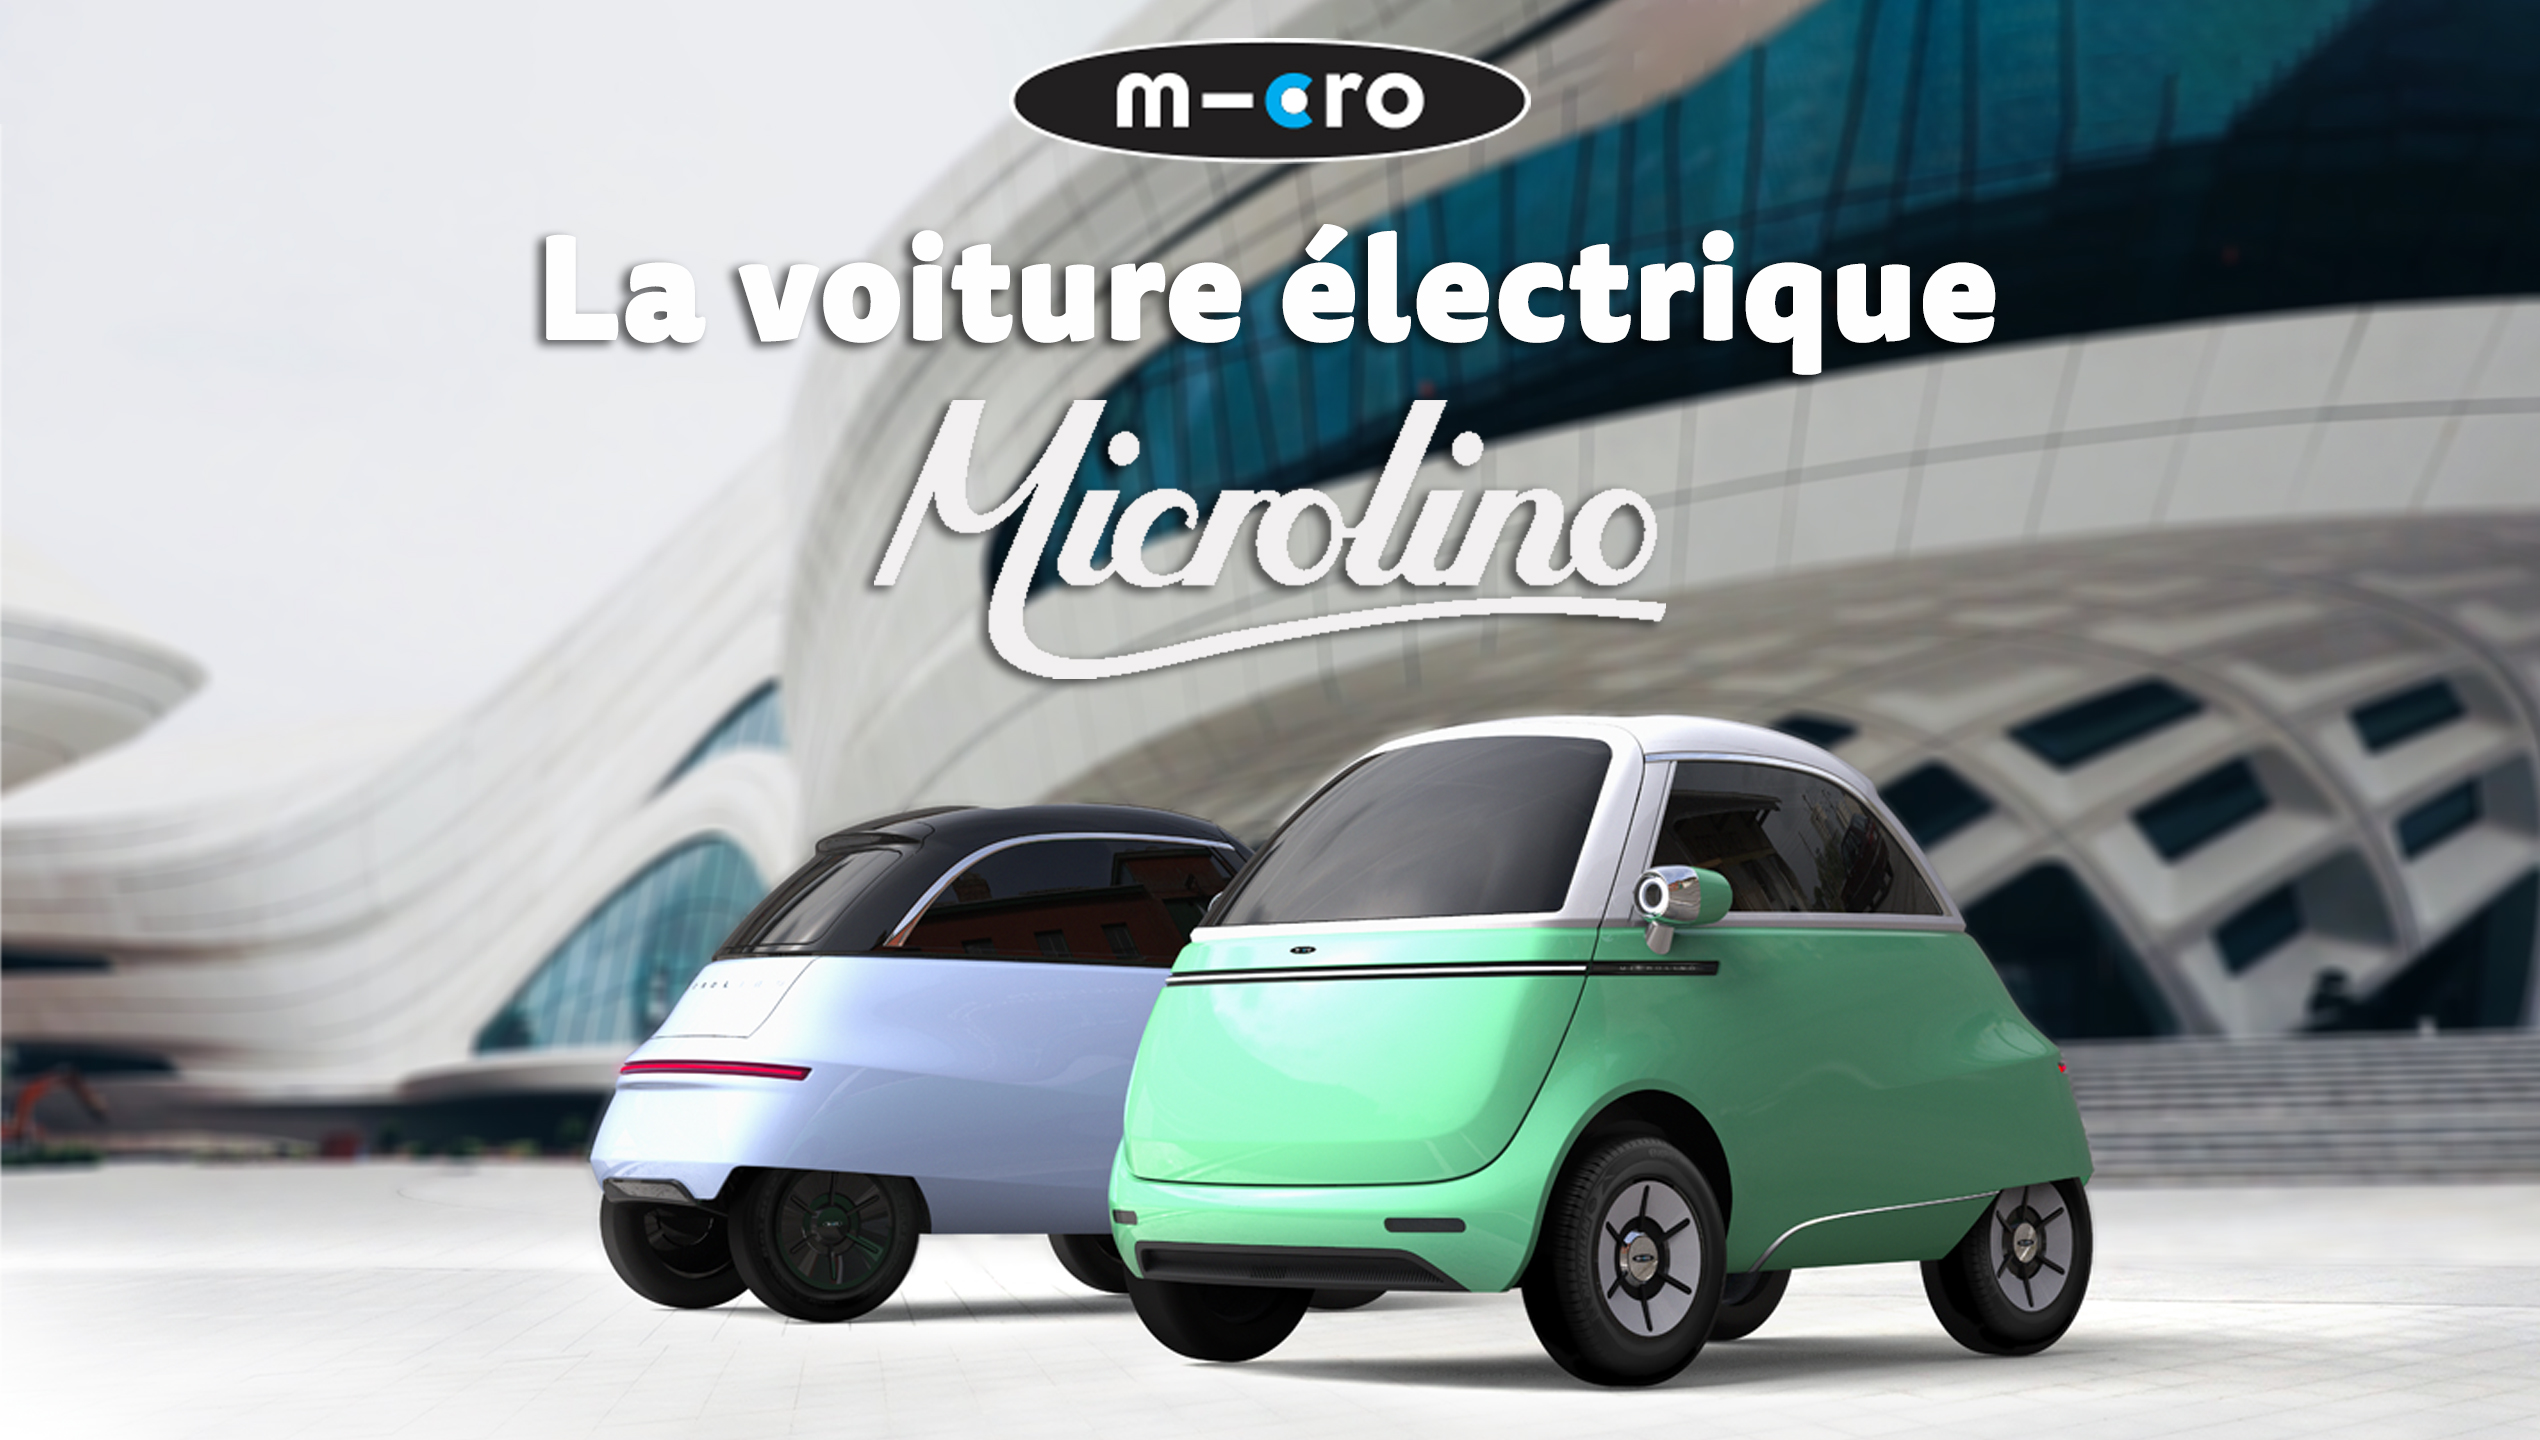 La voiture électrique Microlino ! - We Are Mobility